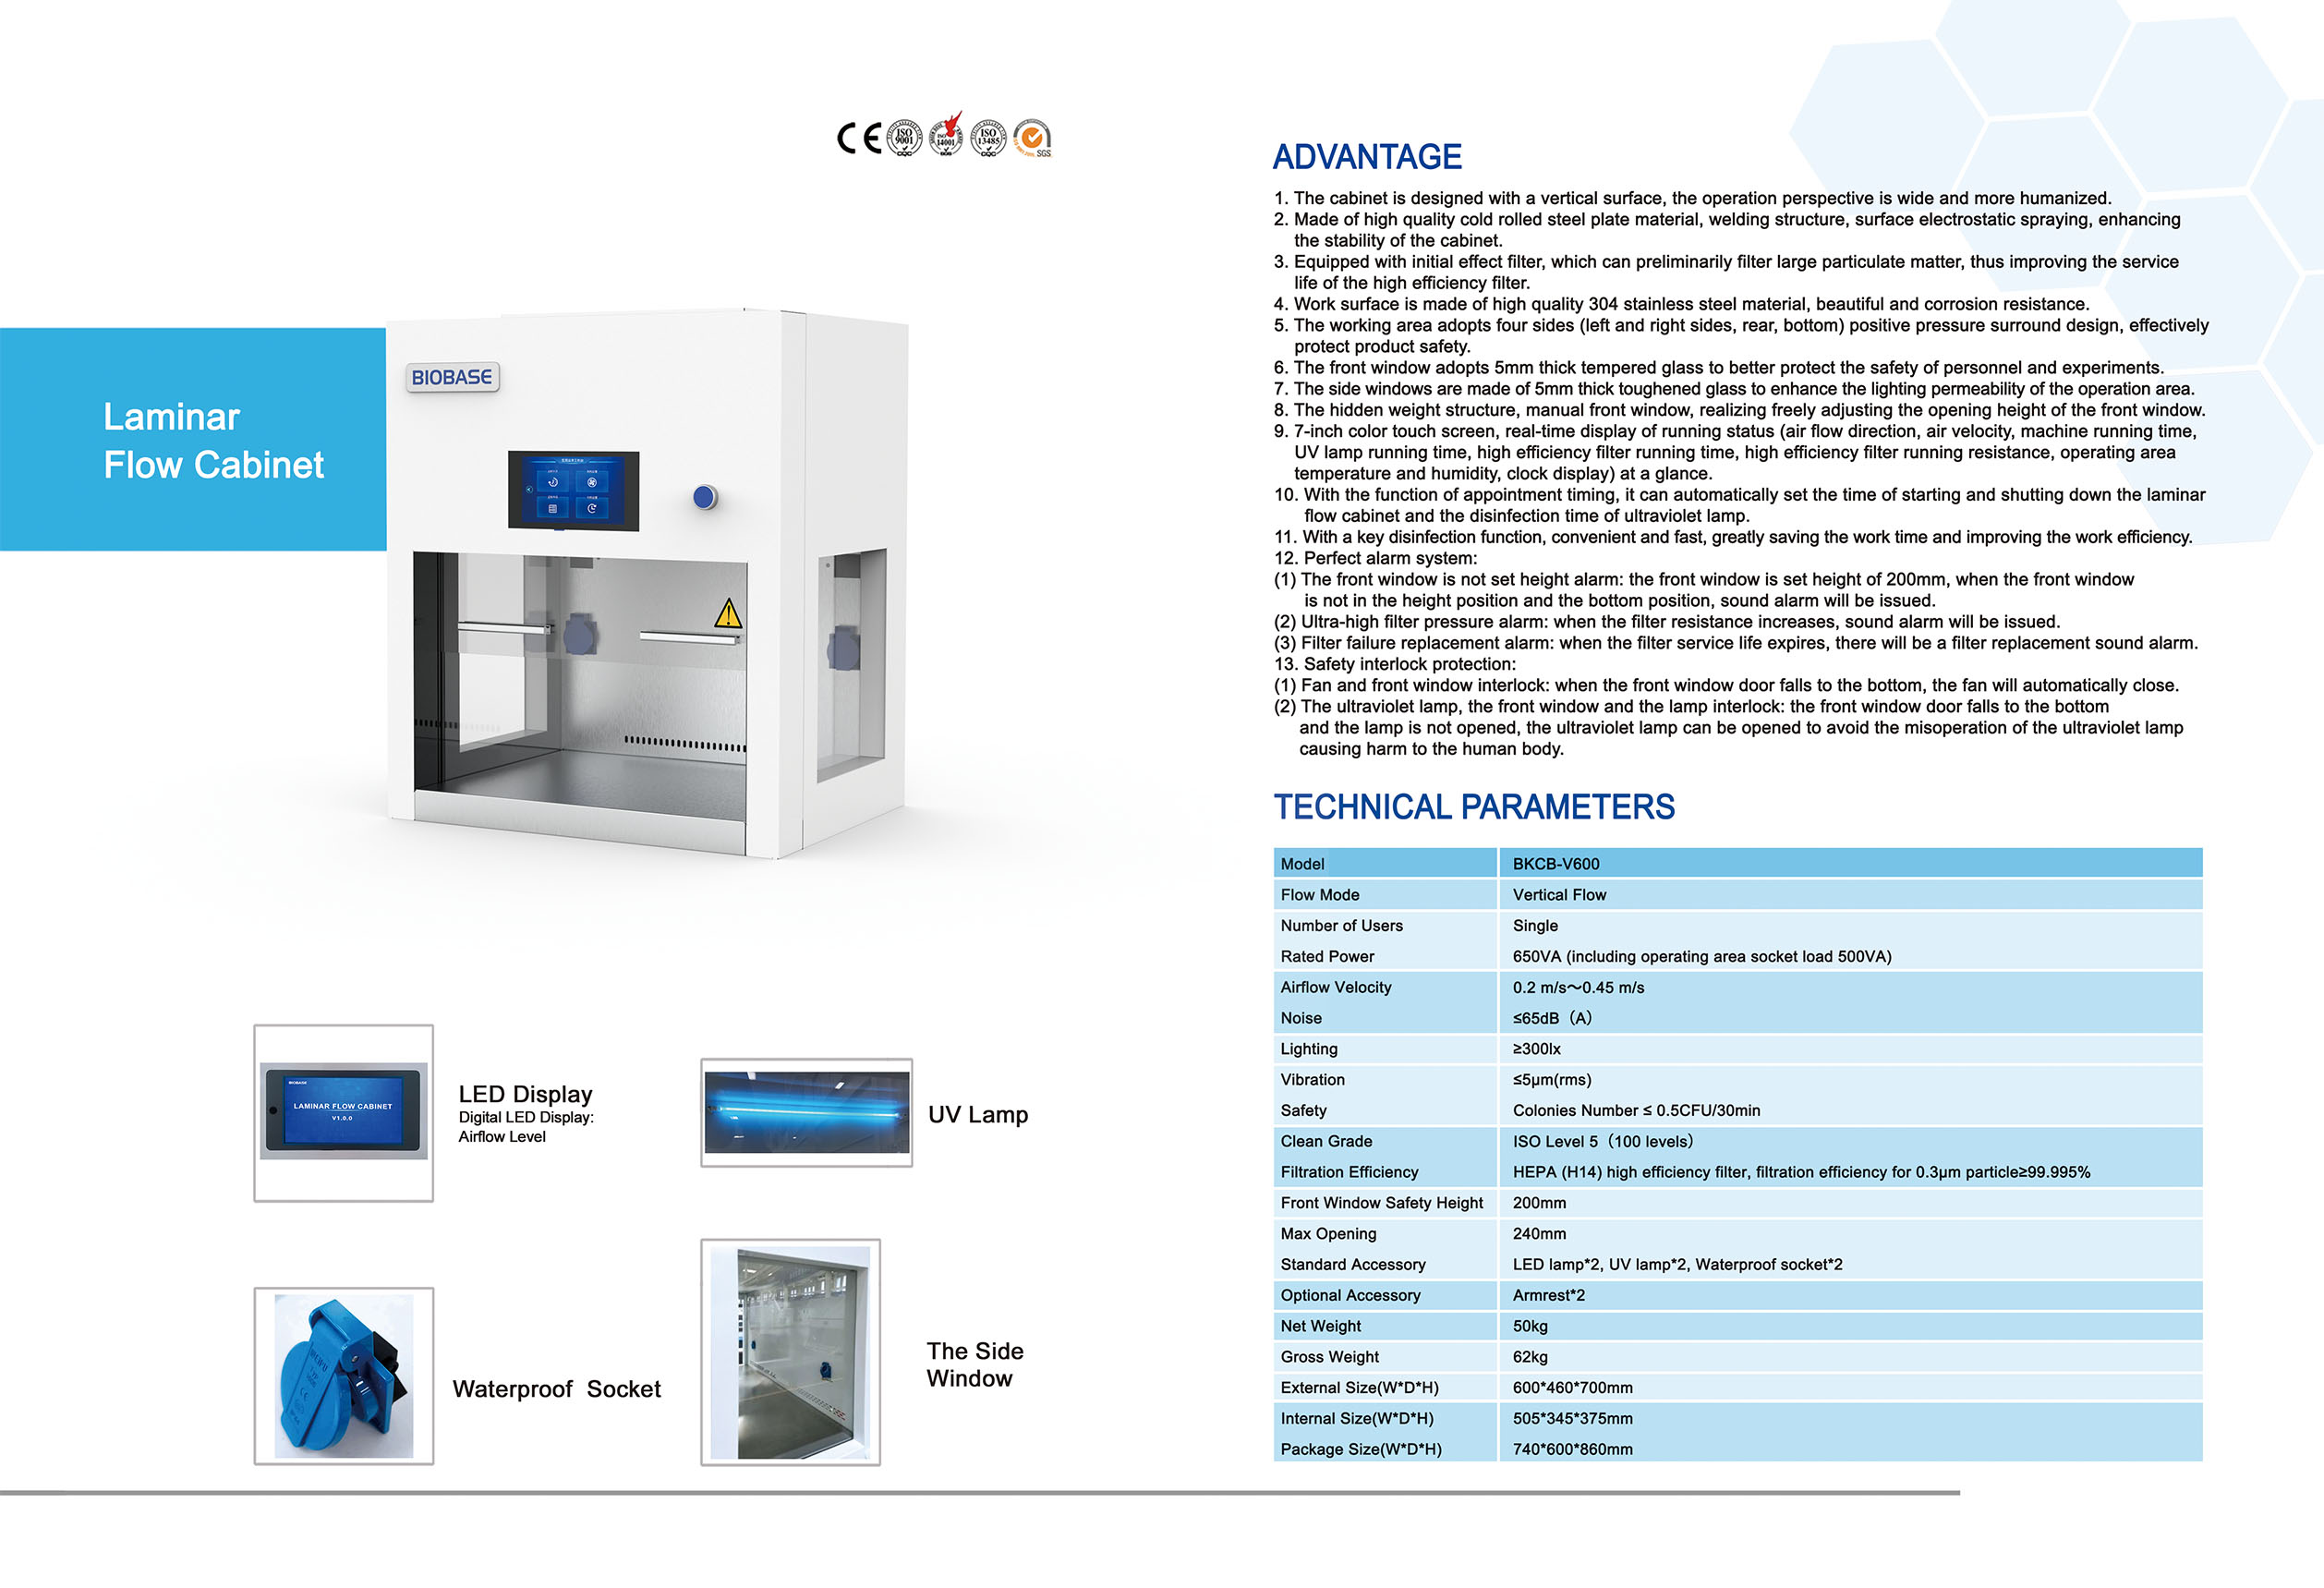 Laminar Flow Cabinet BKCB-V600